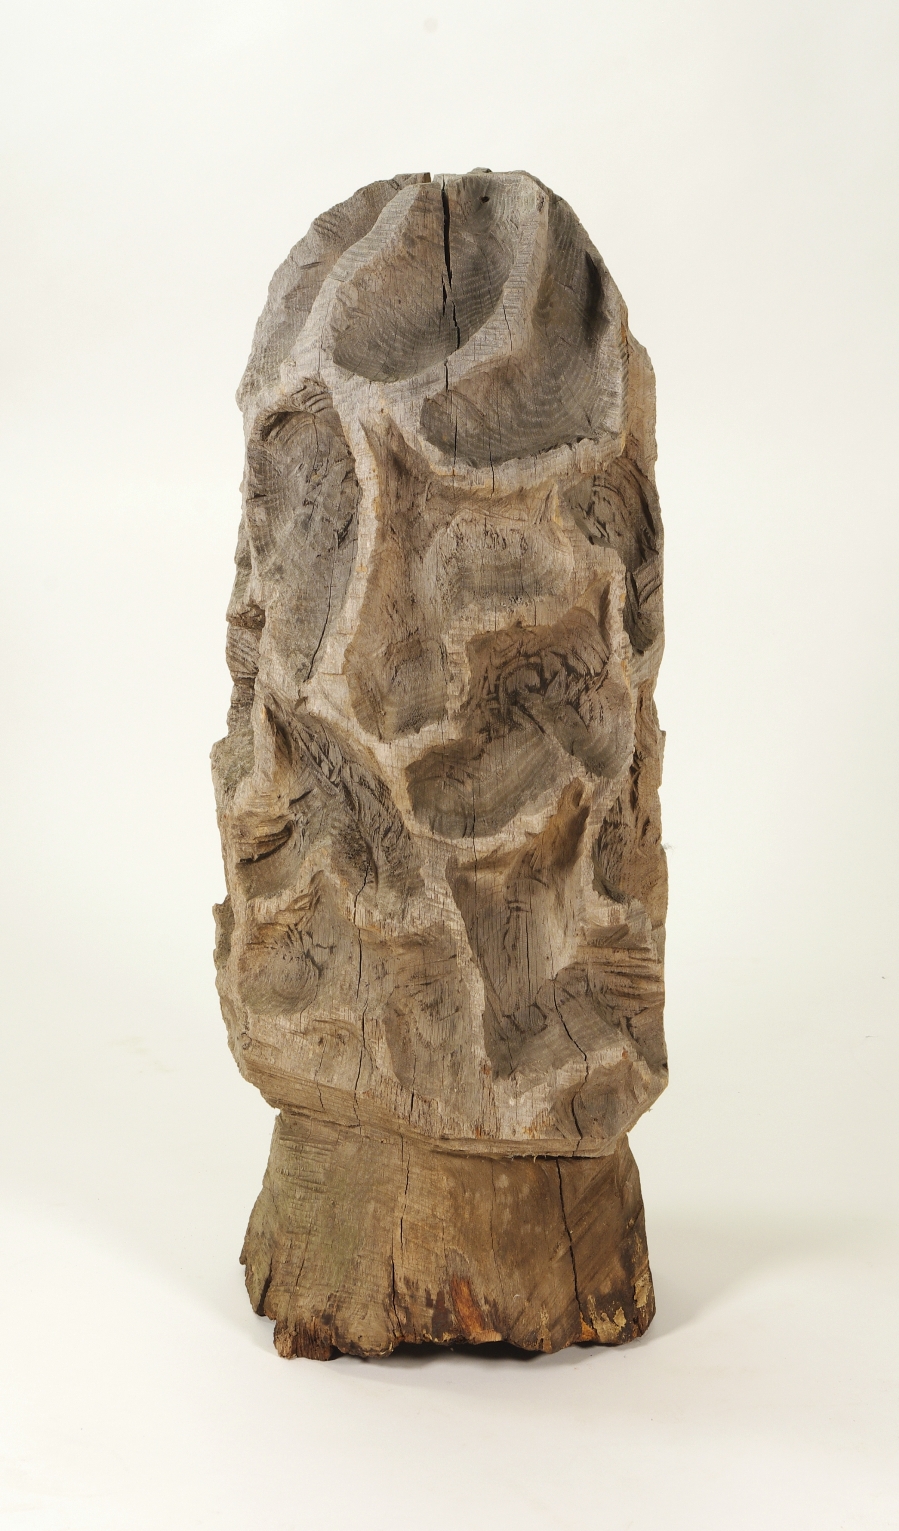 Folk Art Carved Morel Mushroom Sculpture, Mid 20th c.